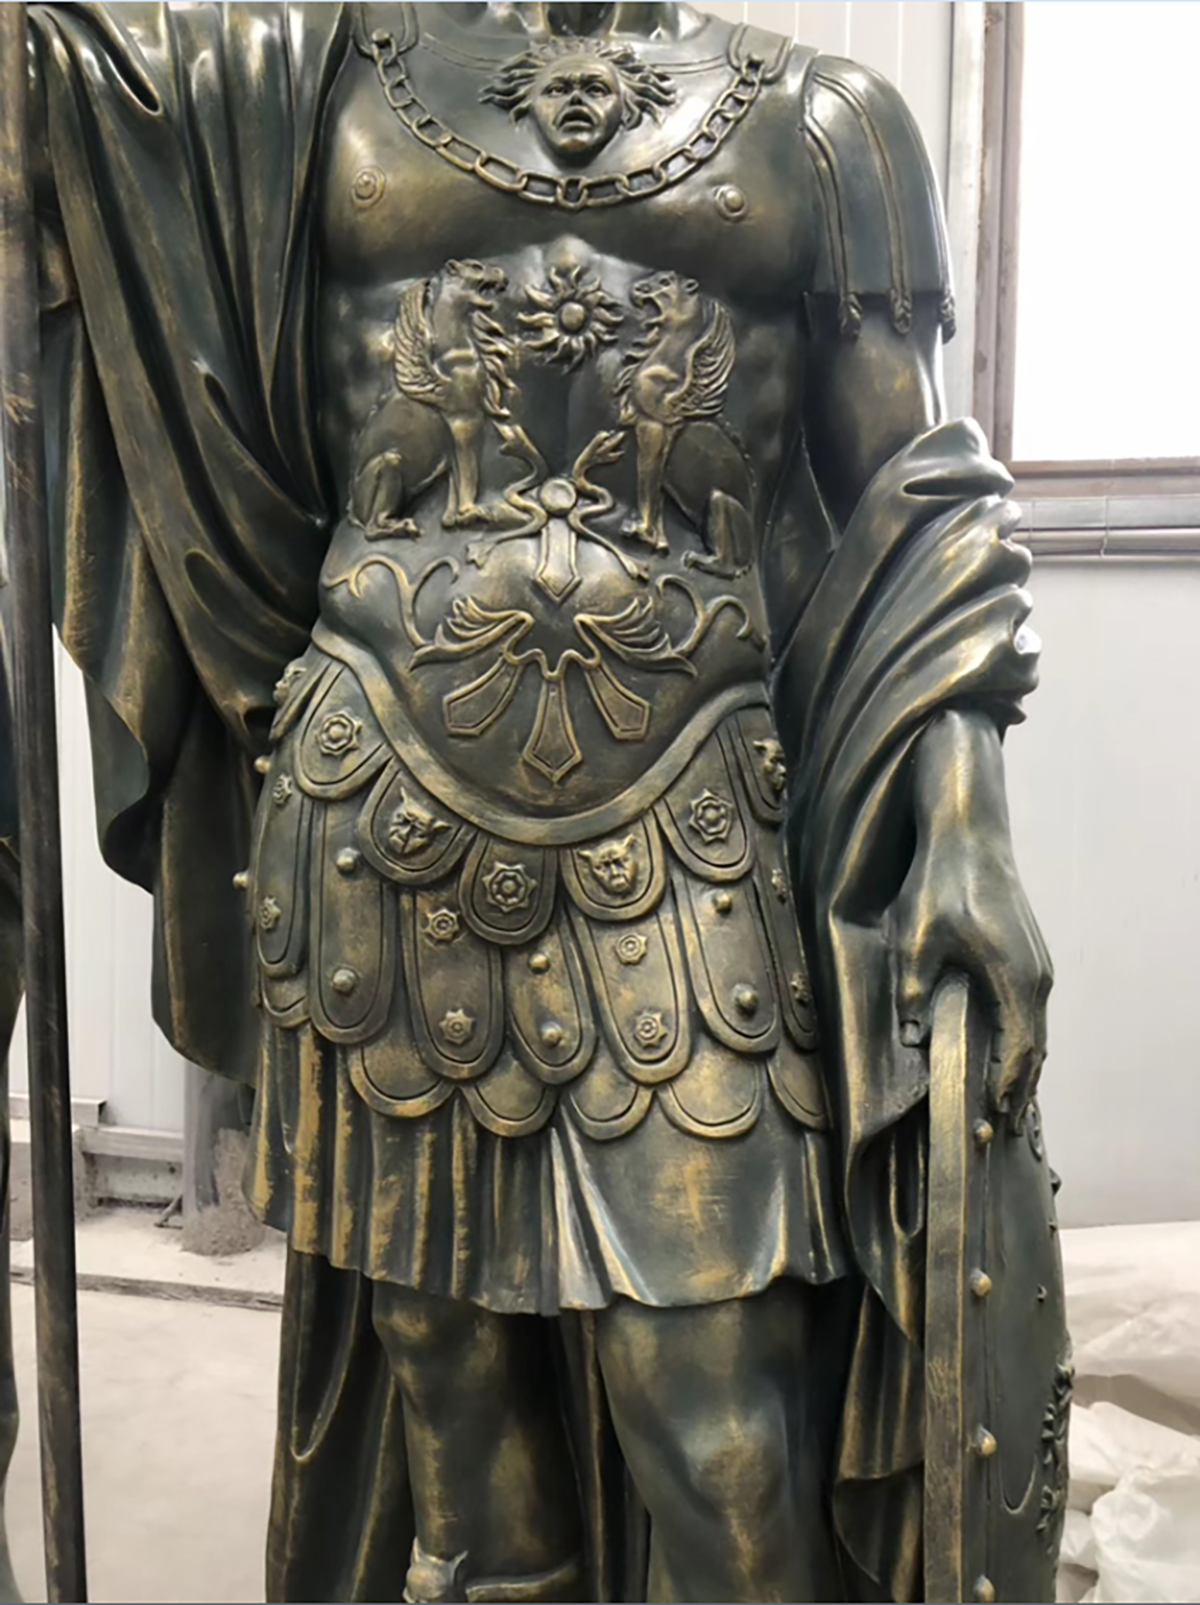 Naturalnej wielkości posągi rzymskich wojowników z włókna szklanego (5) 1